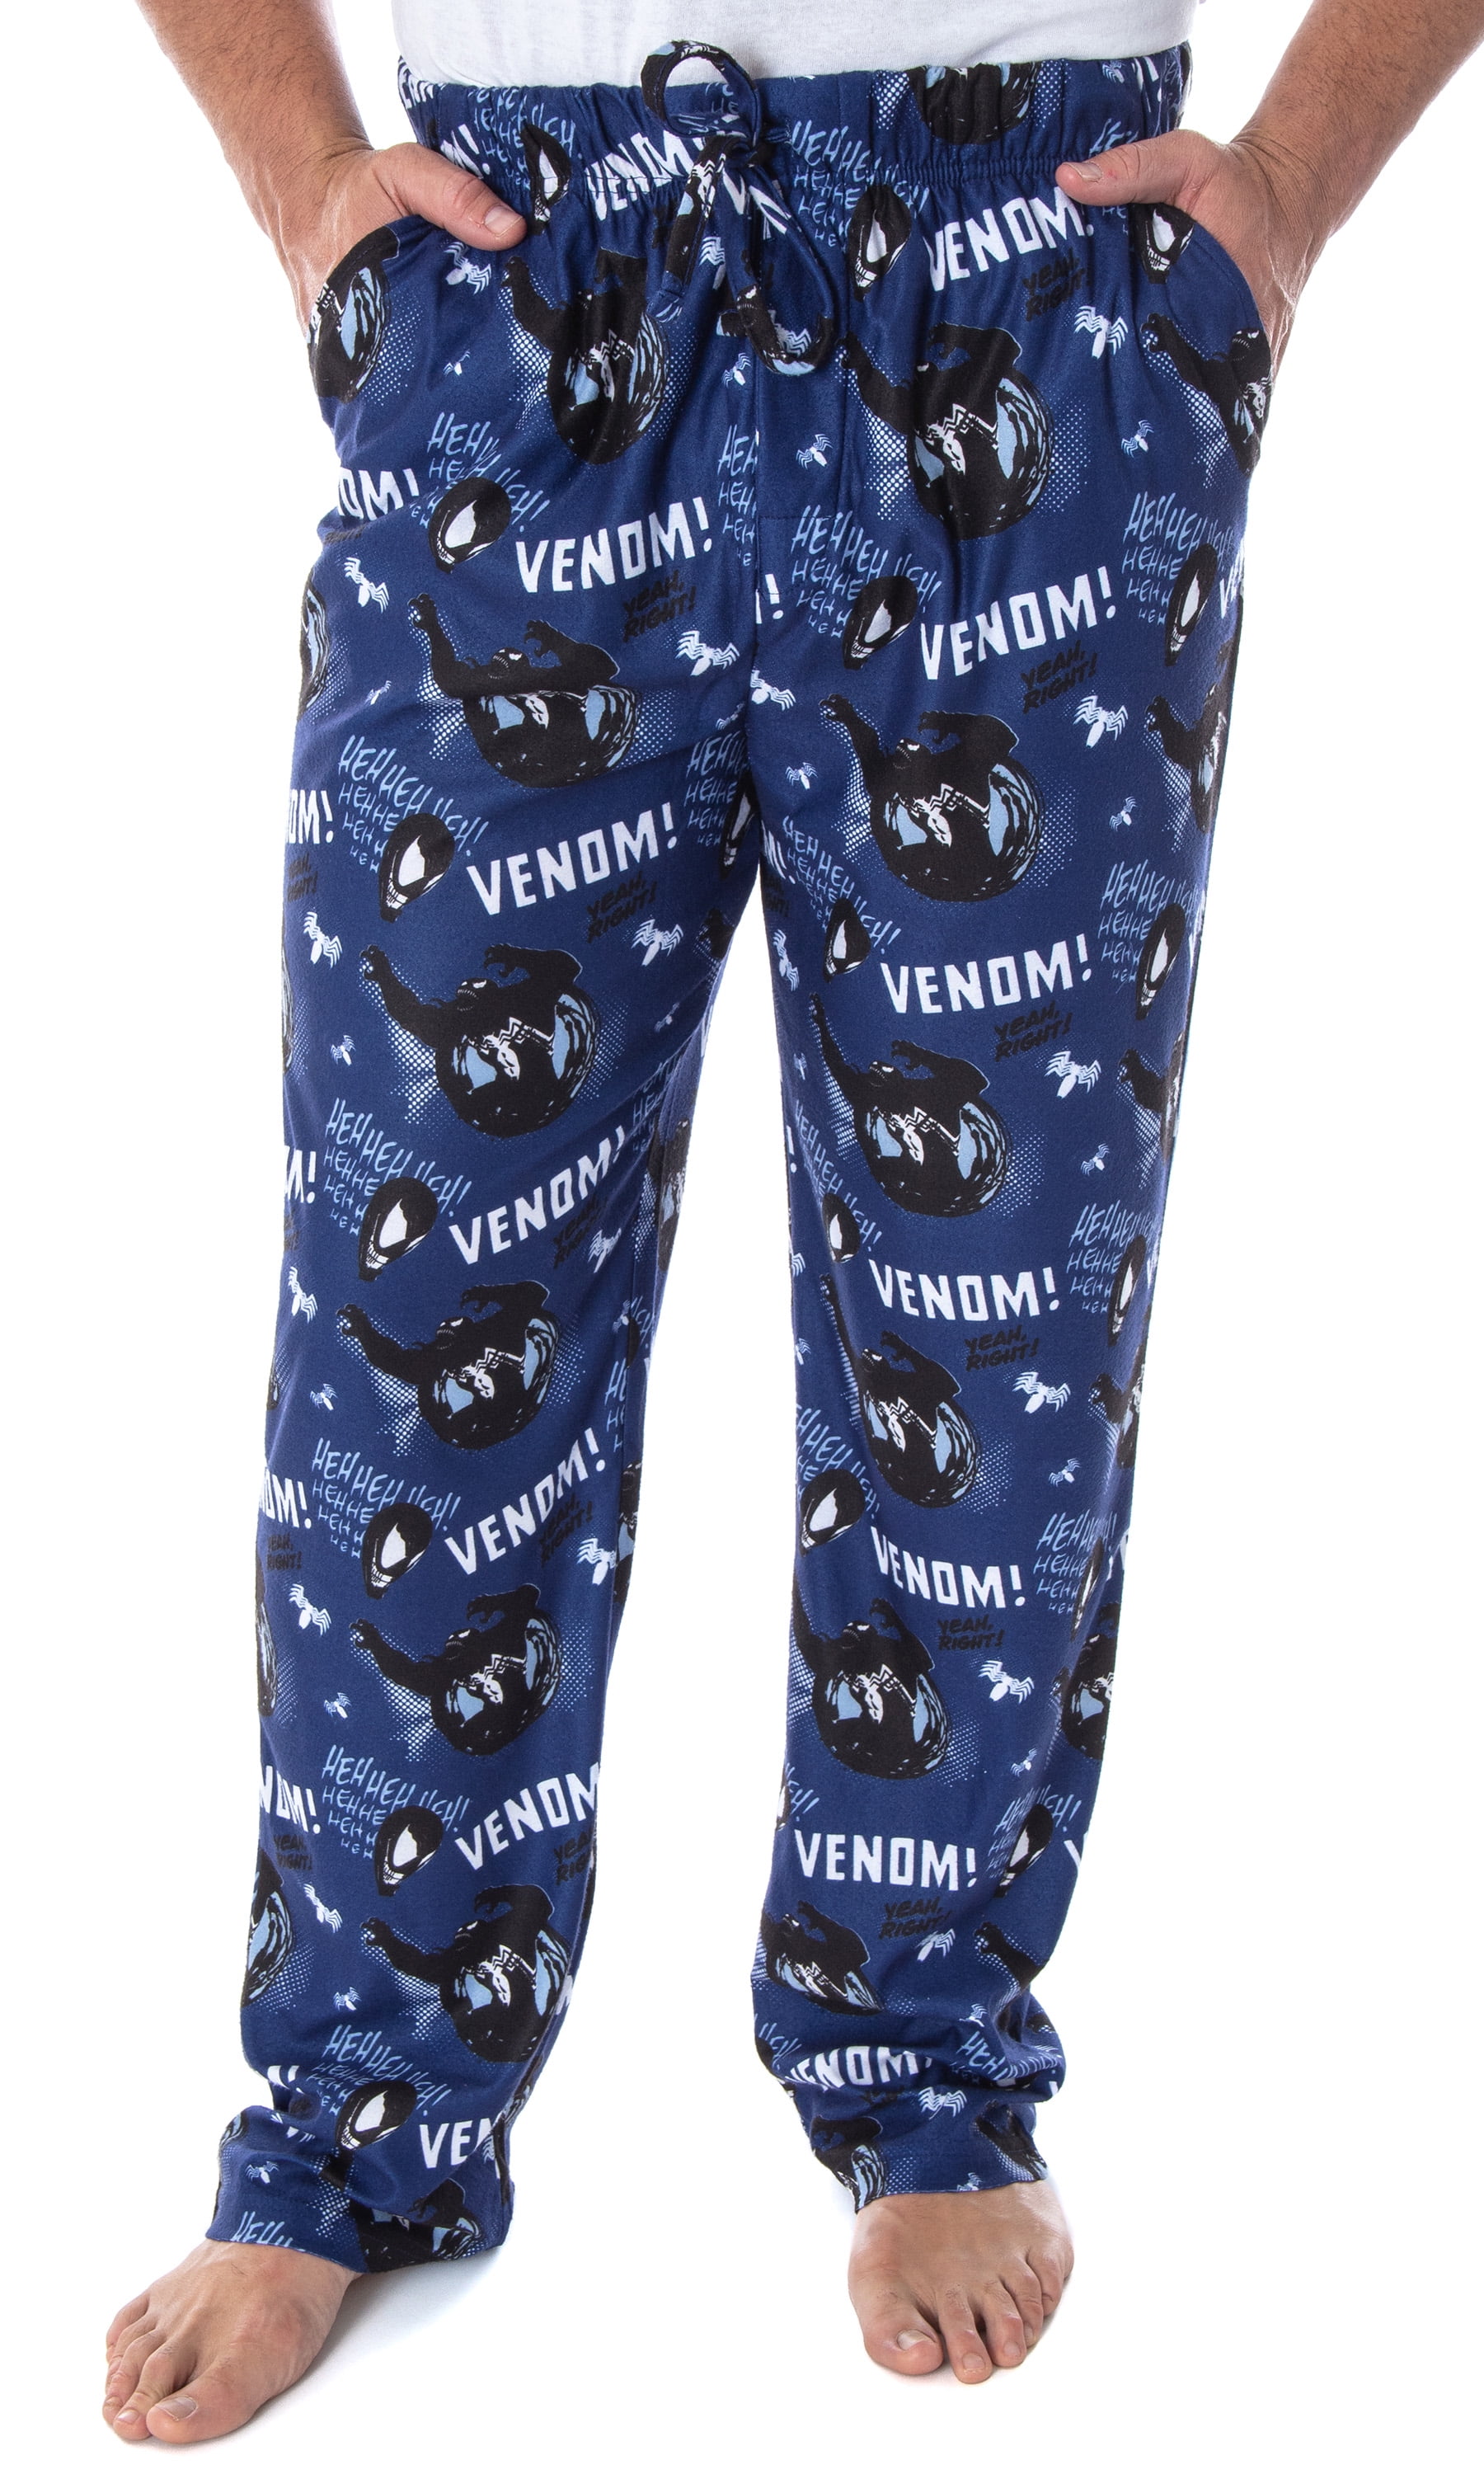 Venom pajamas